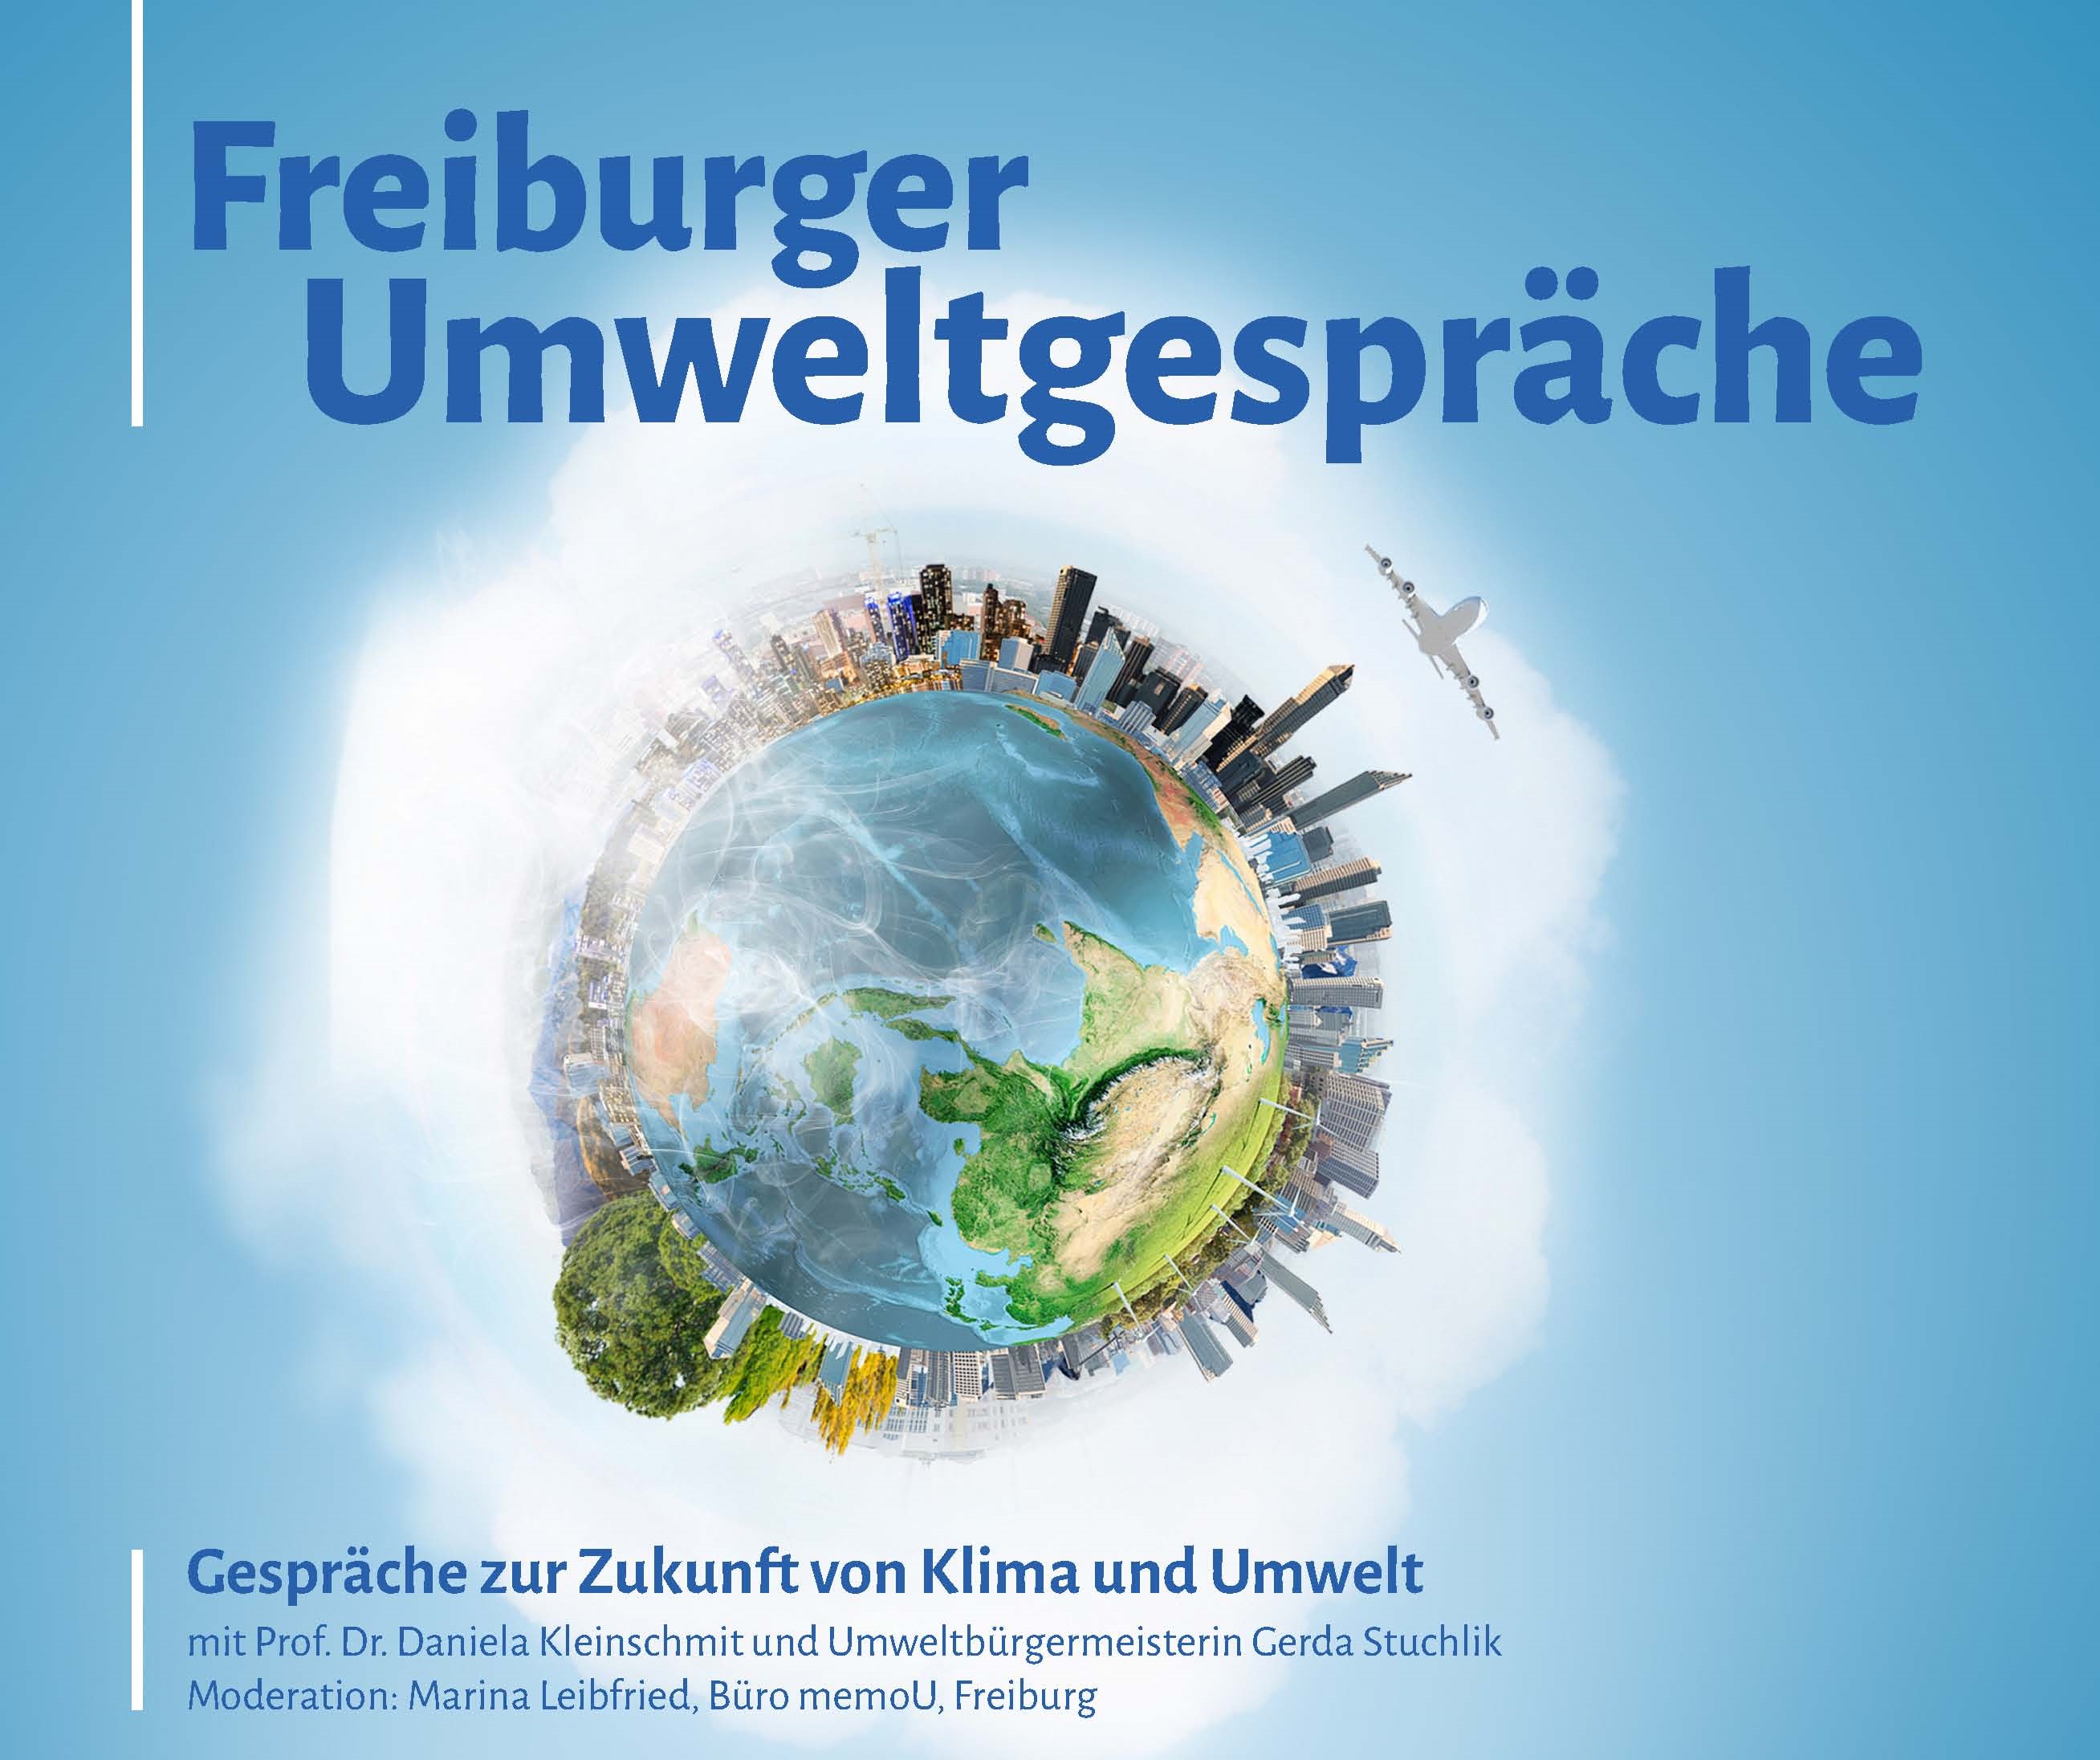 Freiburger Umweltgespräche am 08.05.2019